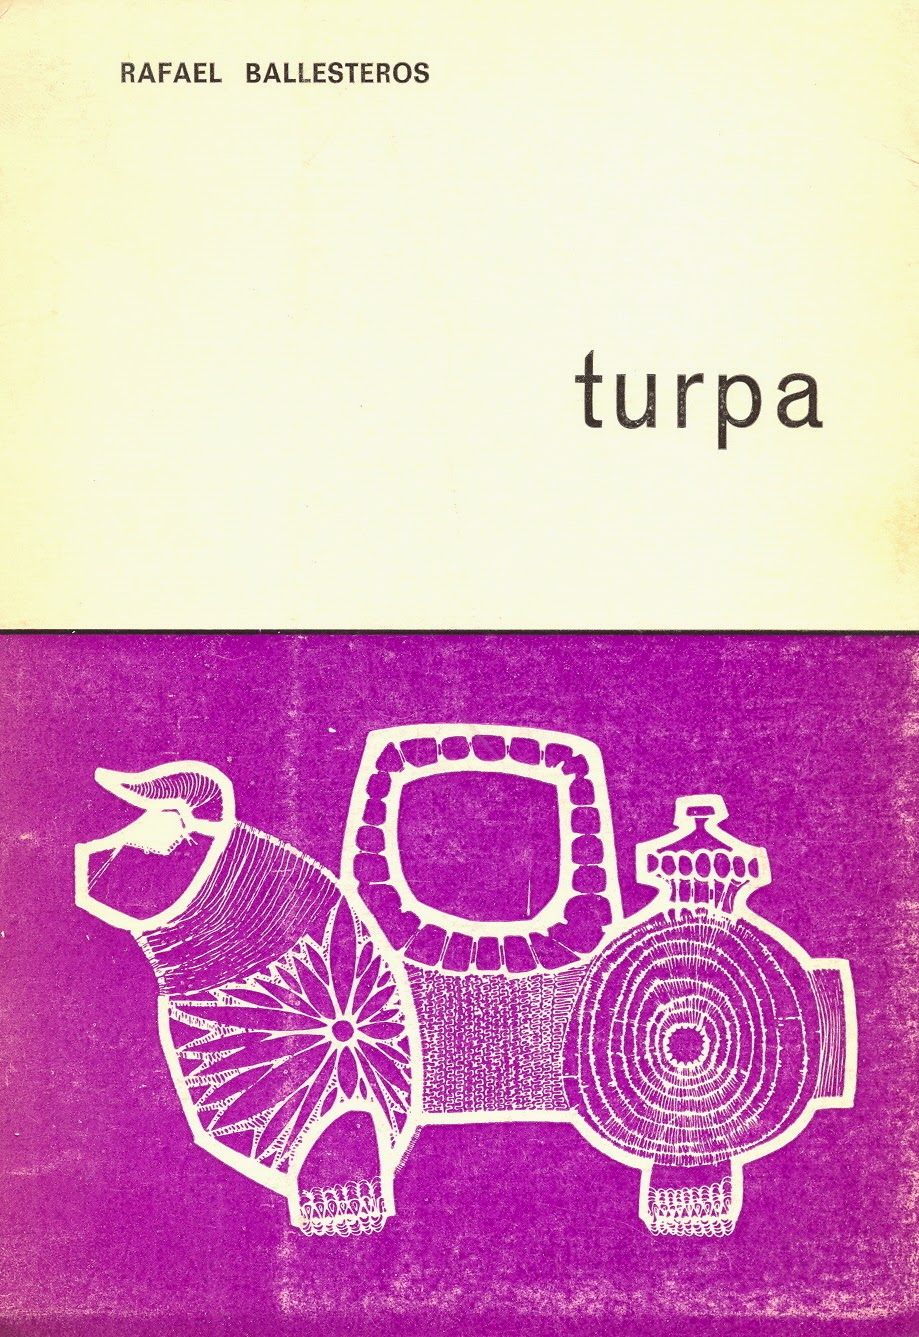 Rafael Ballesteros, "Turpa”.  Ed. El Toro de Barro,  Carboneras del Guadazaón, Cuenca 1972. edicioneseltorodebarro@yahoo.es